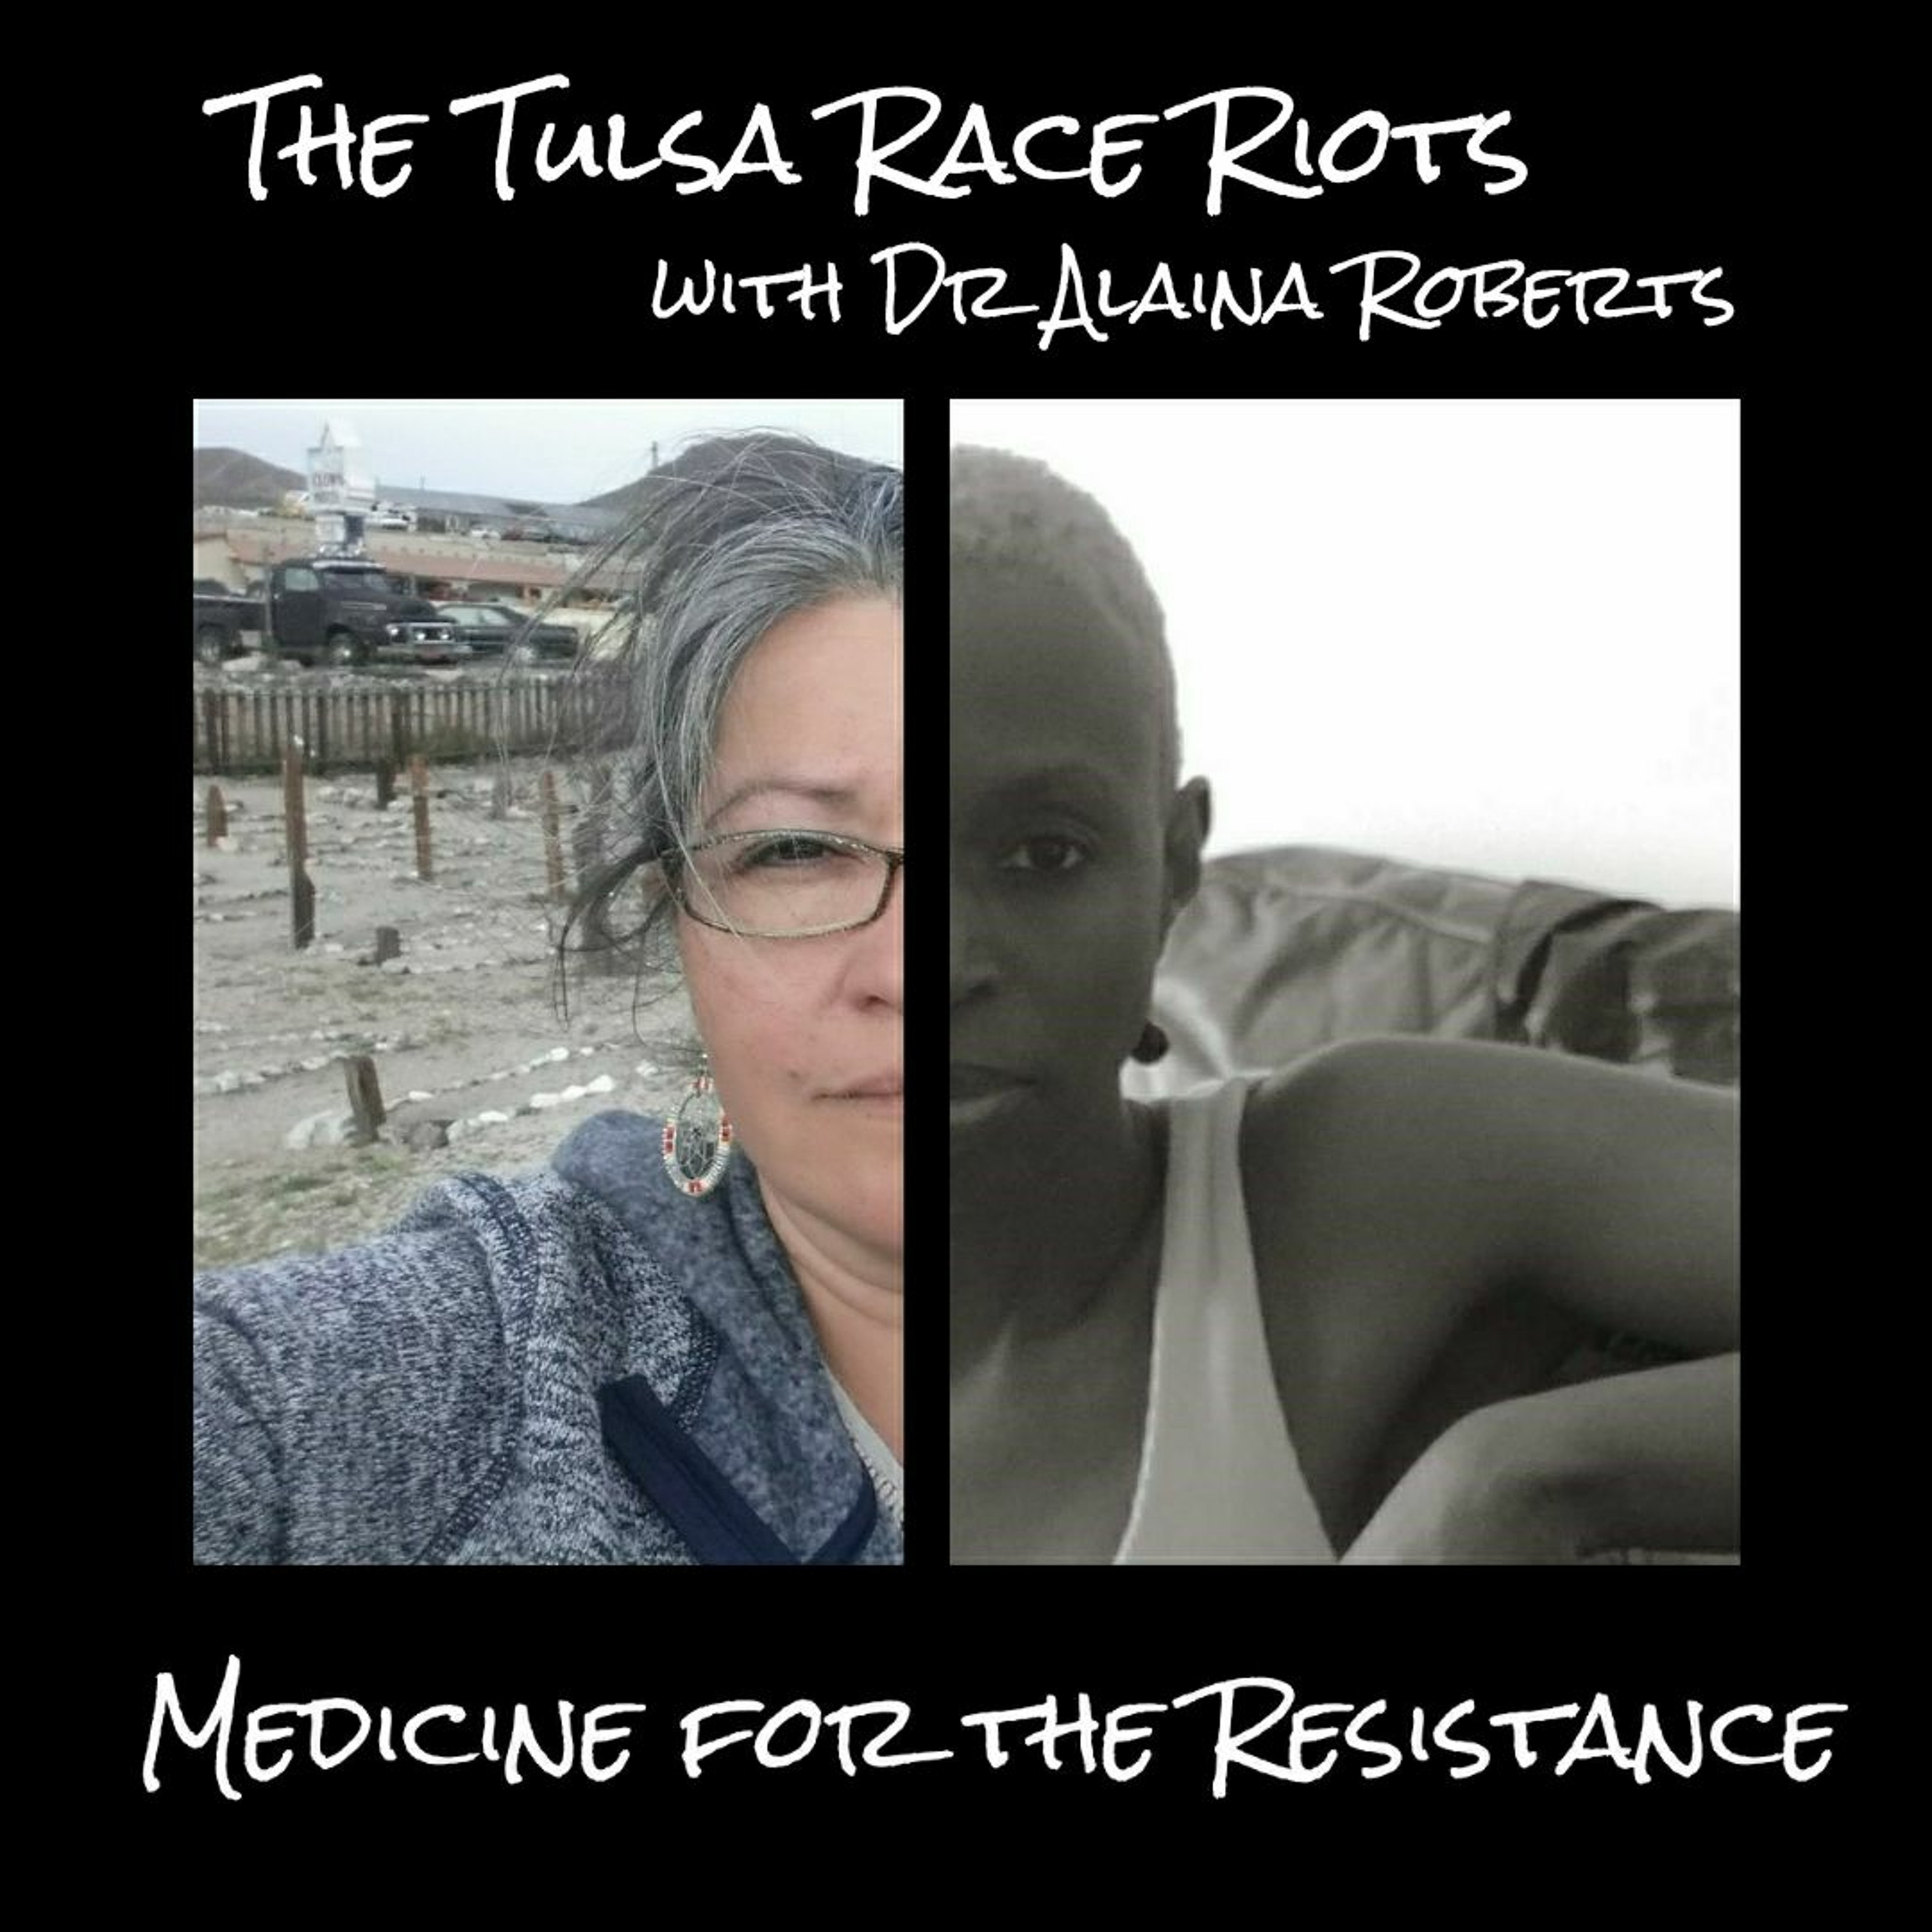 The Tulsa Race Riots with Dr. Alaina Roberts